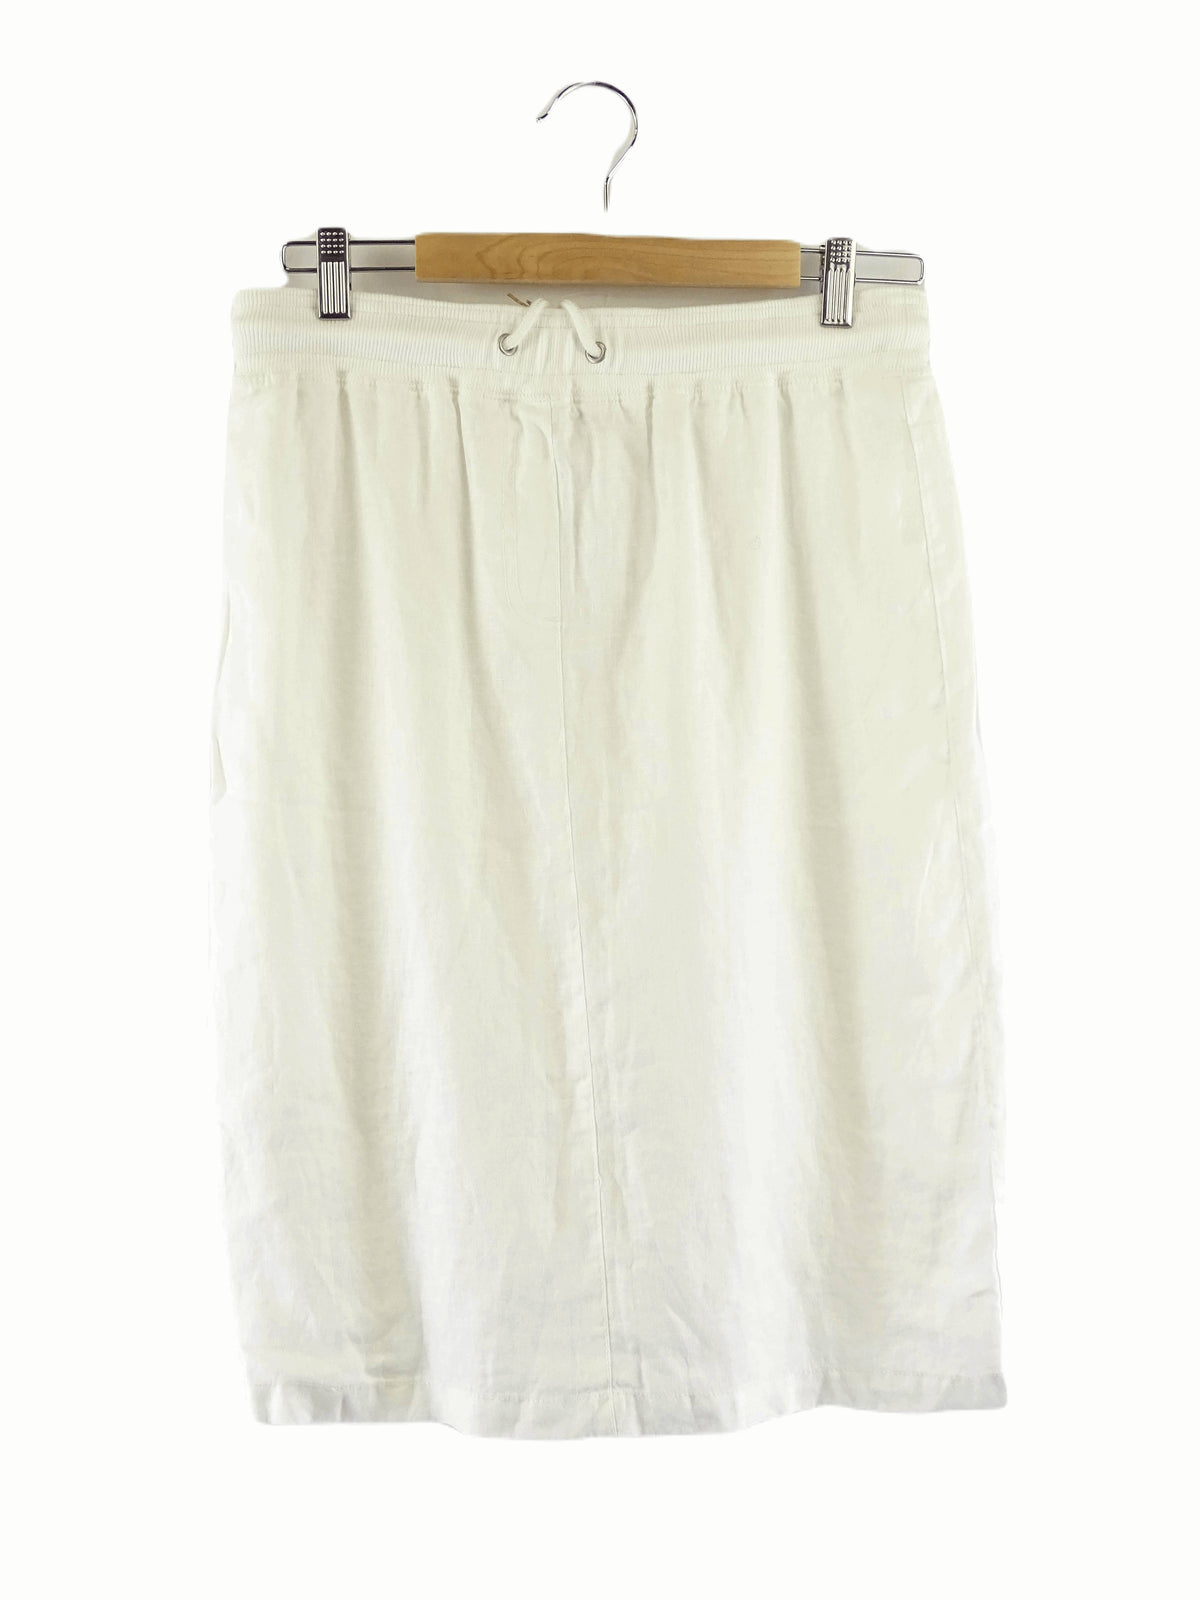 David Jones White Linen Skirt 8